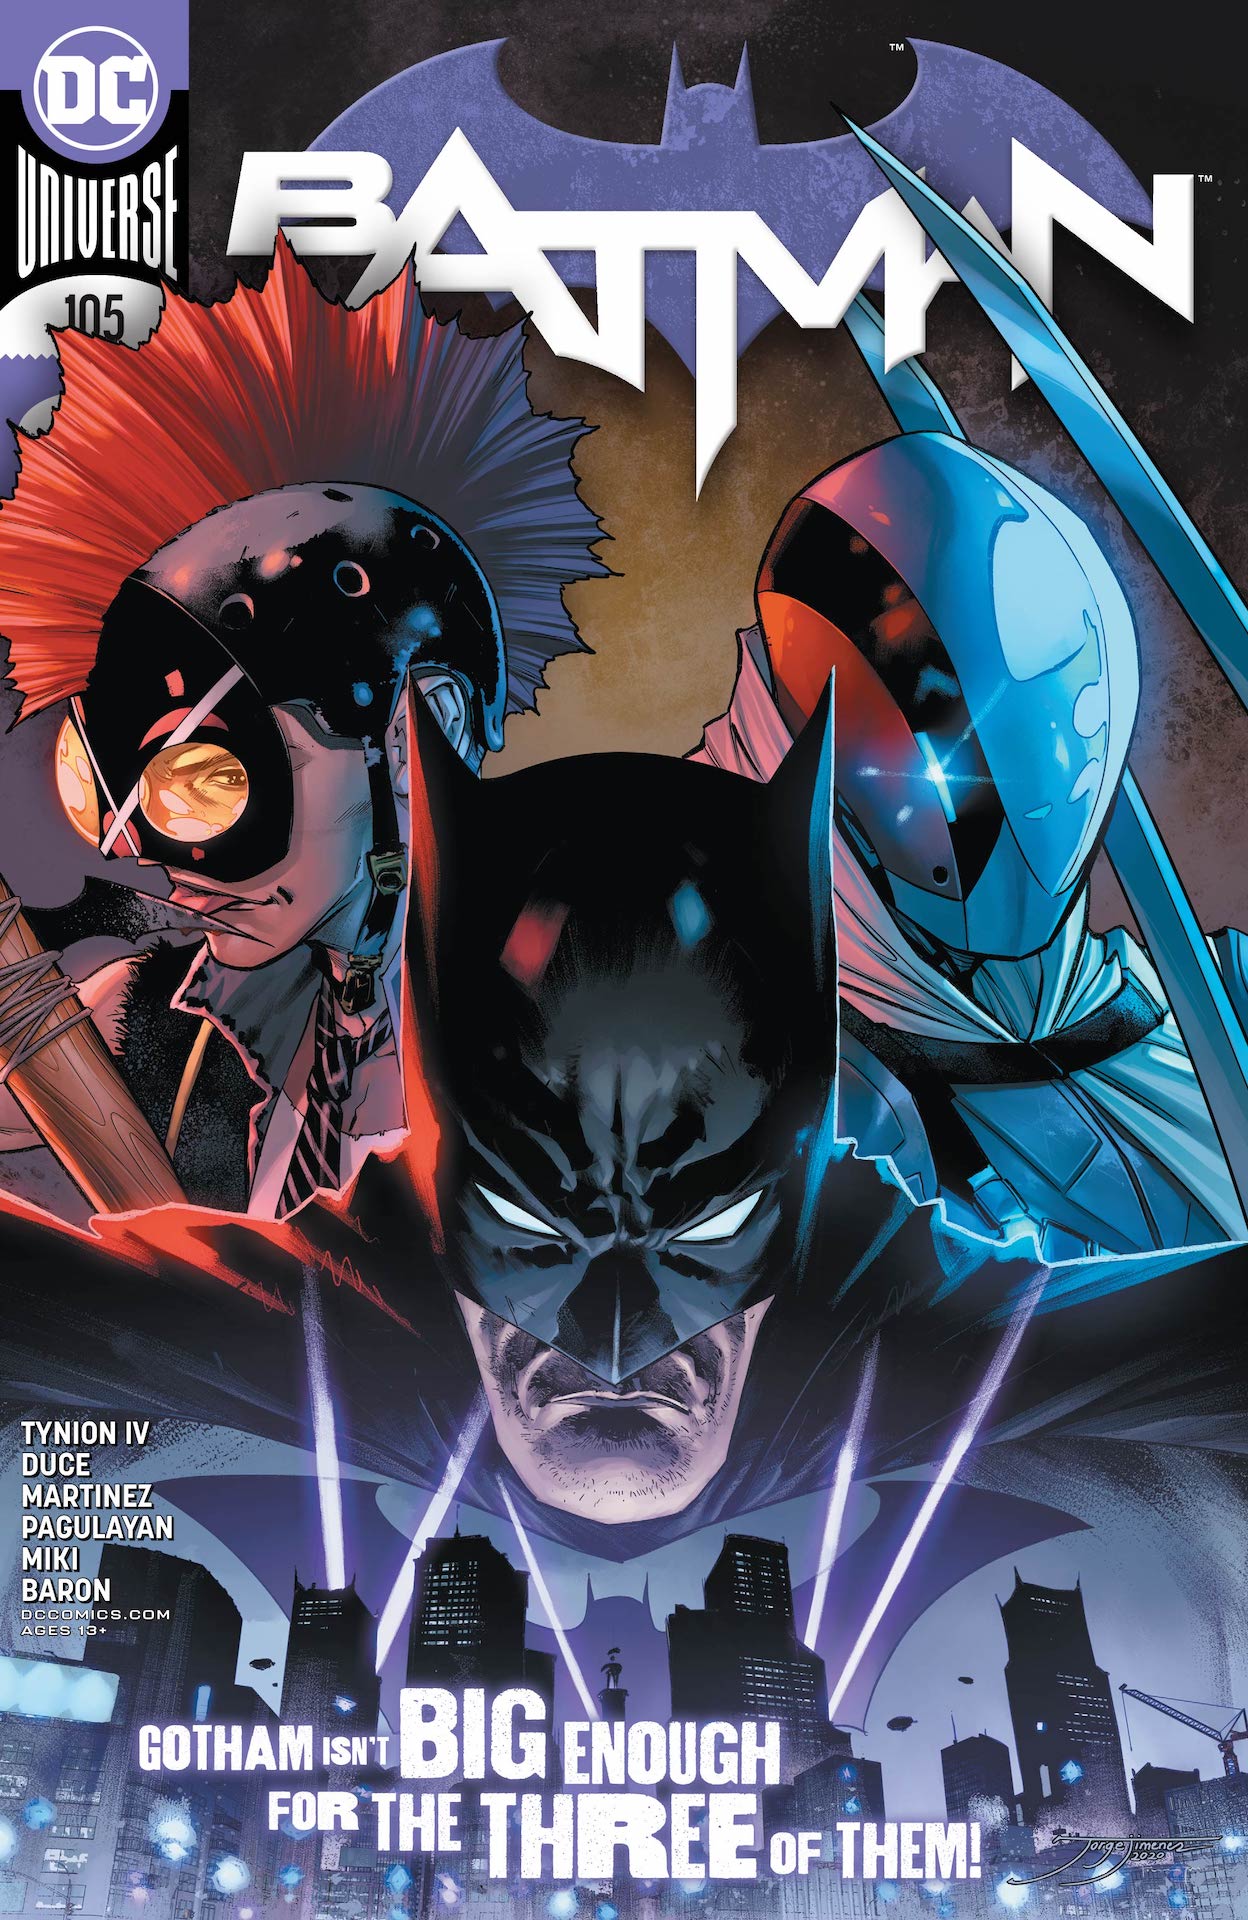 DC Preview: Batman #105